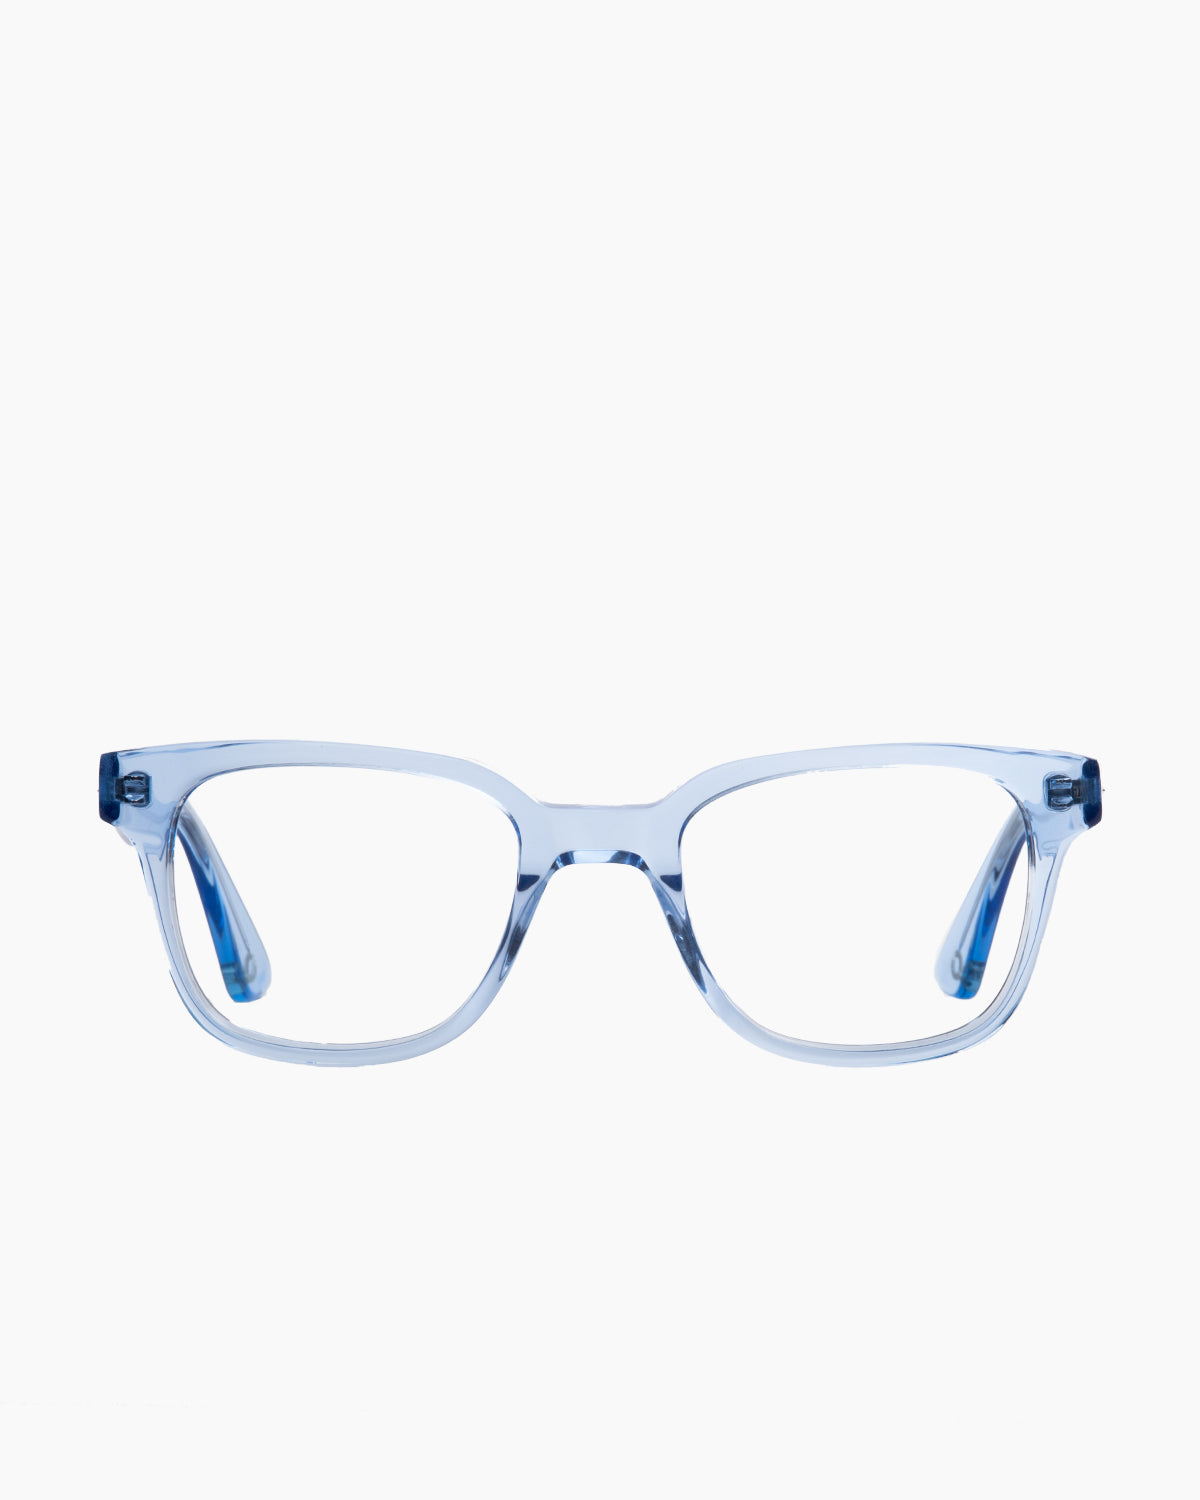 Evolve - Harper - 256 | Bar à lunettes:  Marie-Sophie Dion